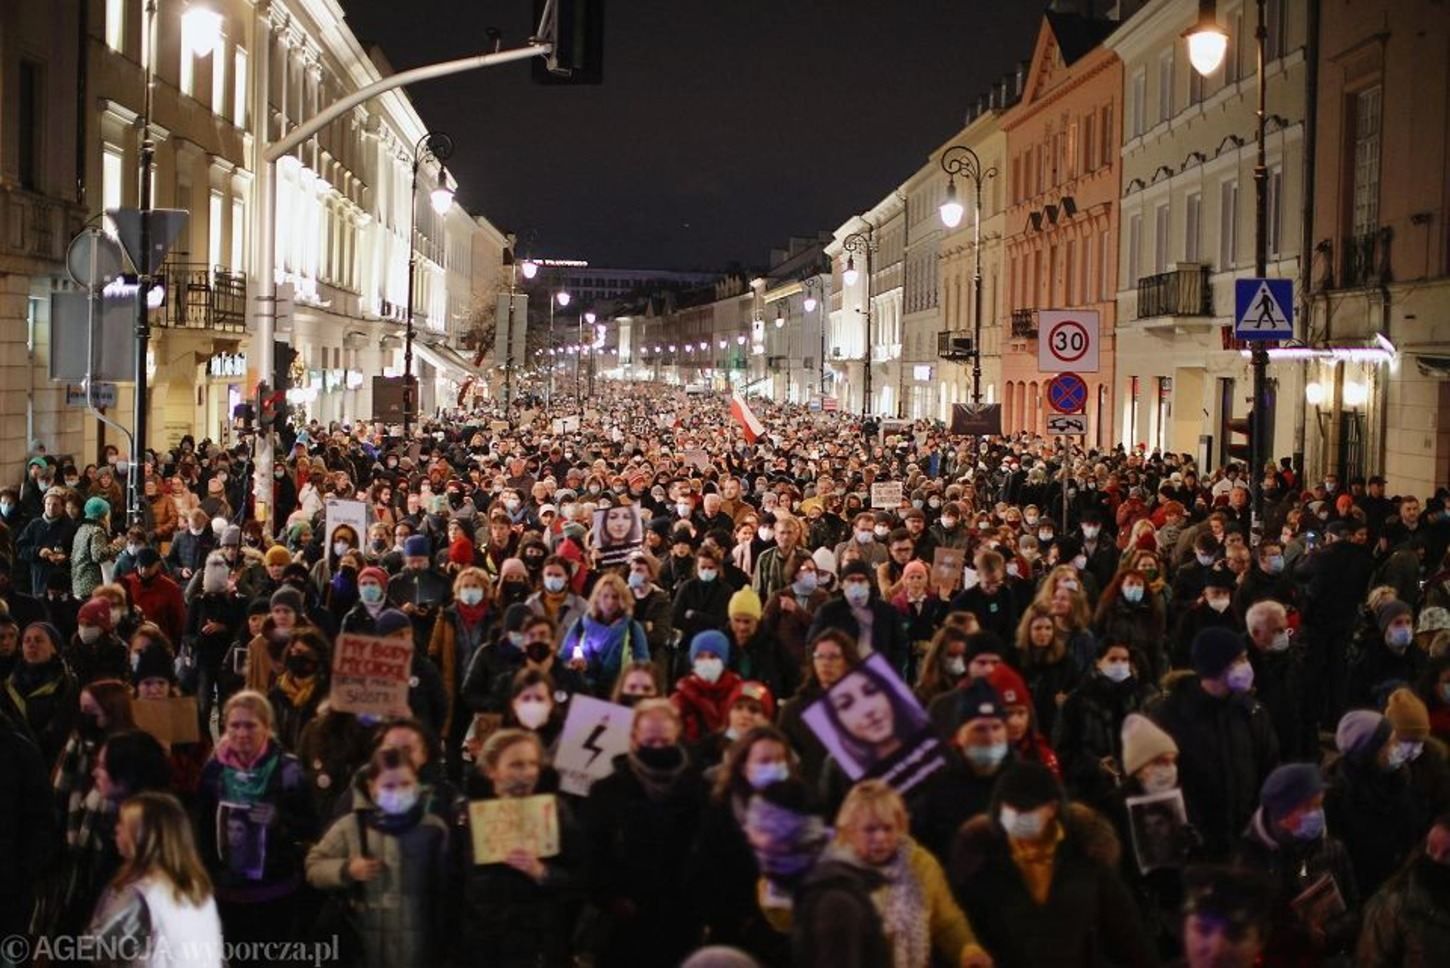 Власти Польши отреагировали на протесты после смерти беременной женщины